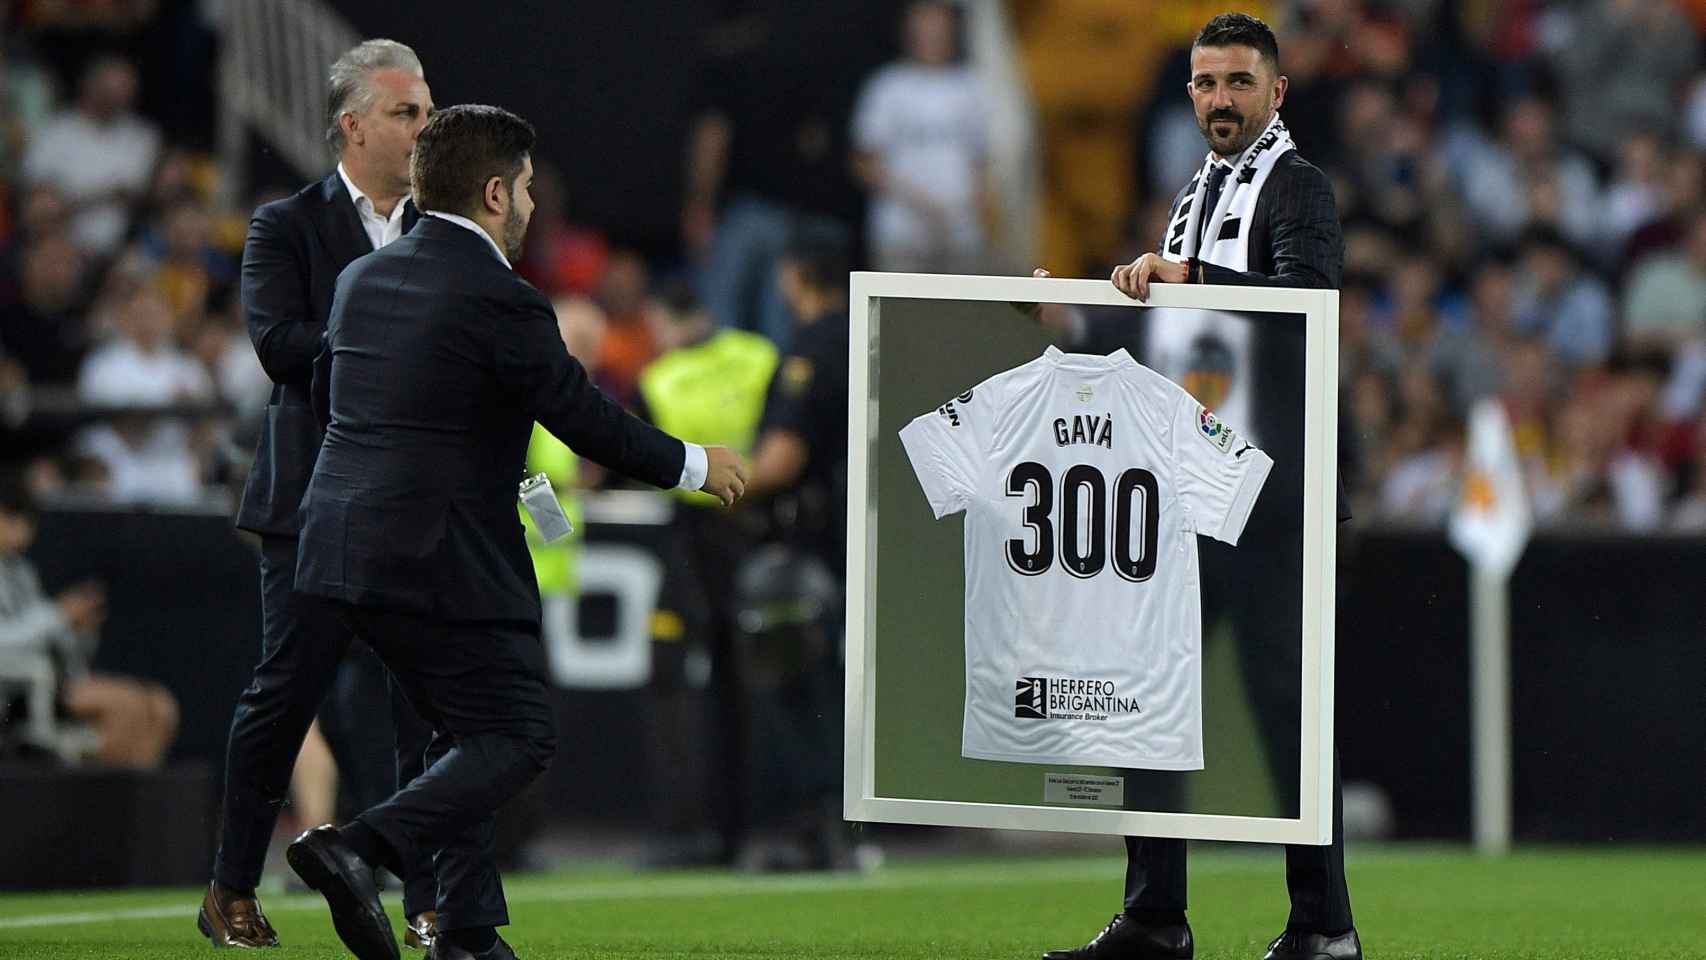 David Villa entrega una camiseta conmemorativa a Gayà por sus 300 partidos con el Valencia